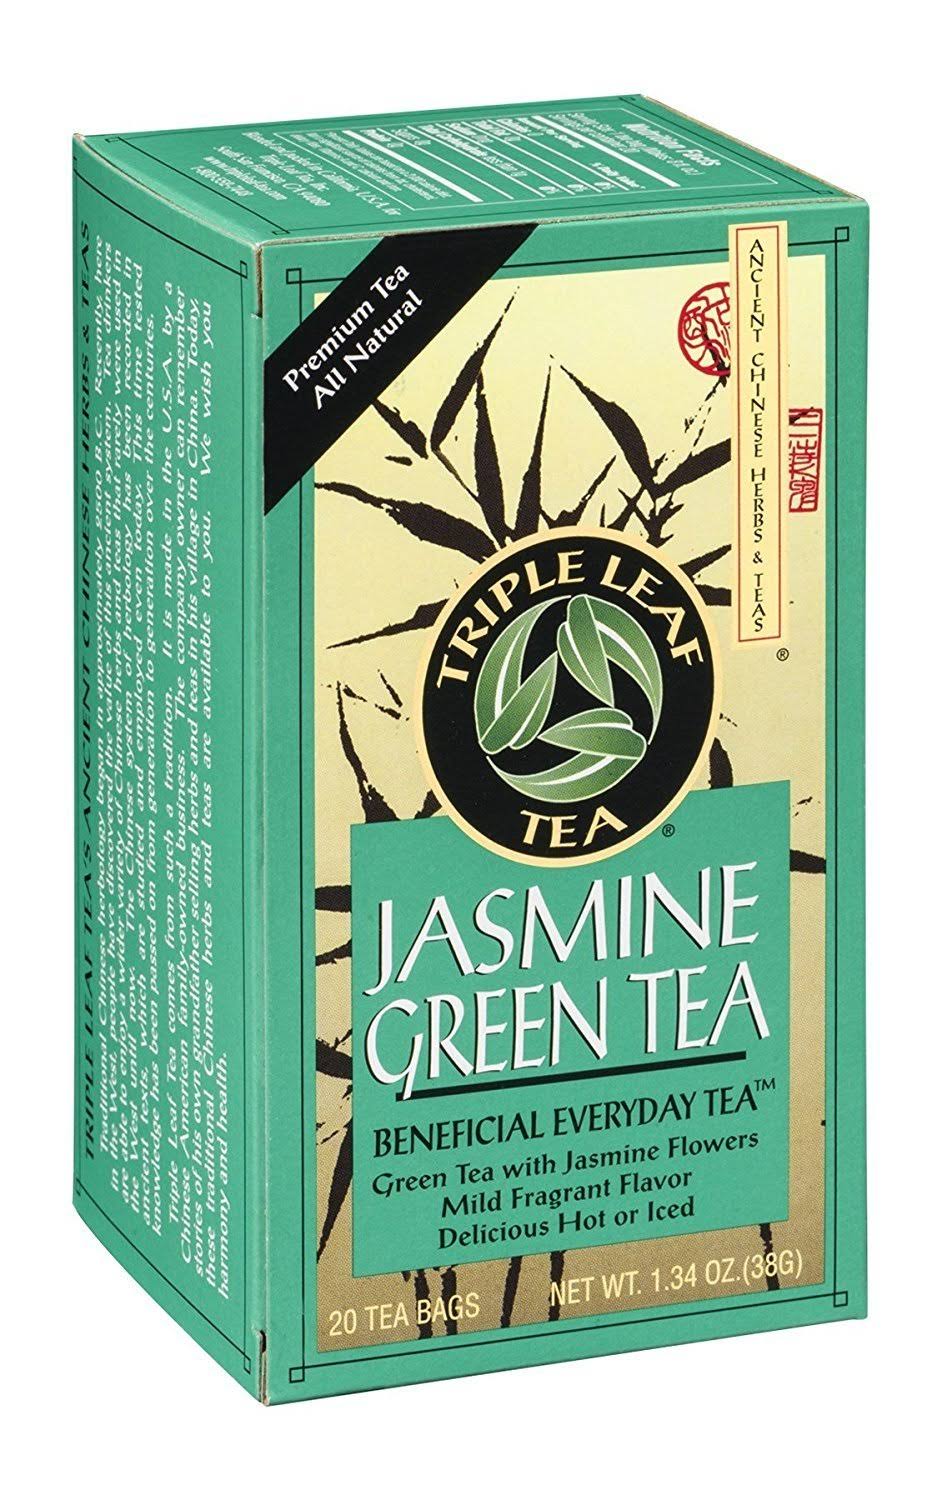 Triple Leaf Tea Jasmine Green Tea